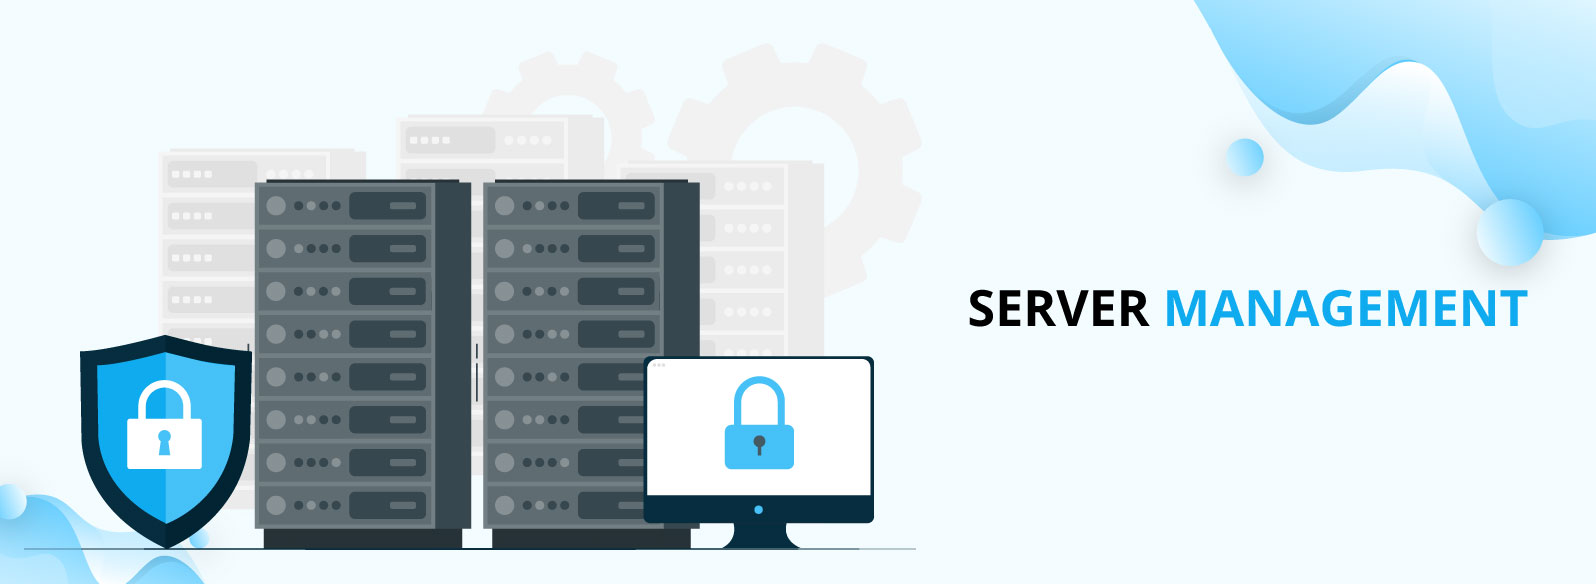 Server Management by Desktop Central